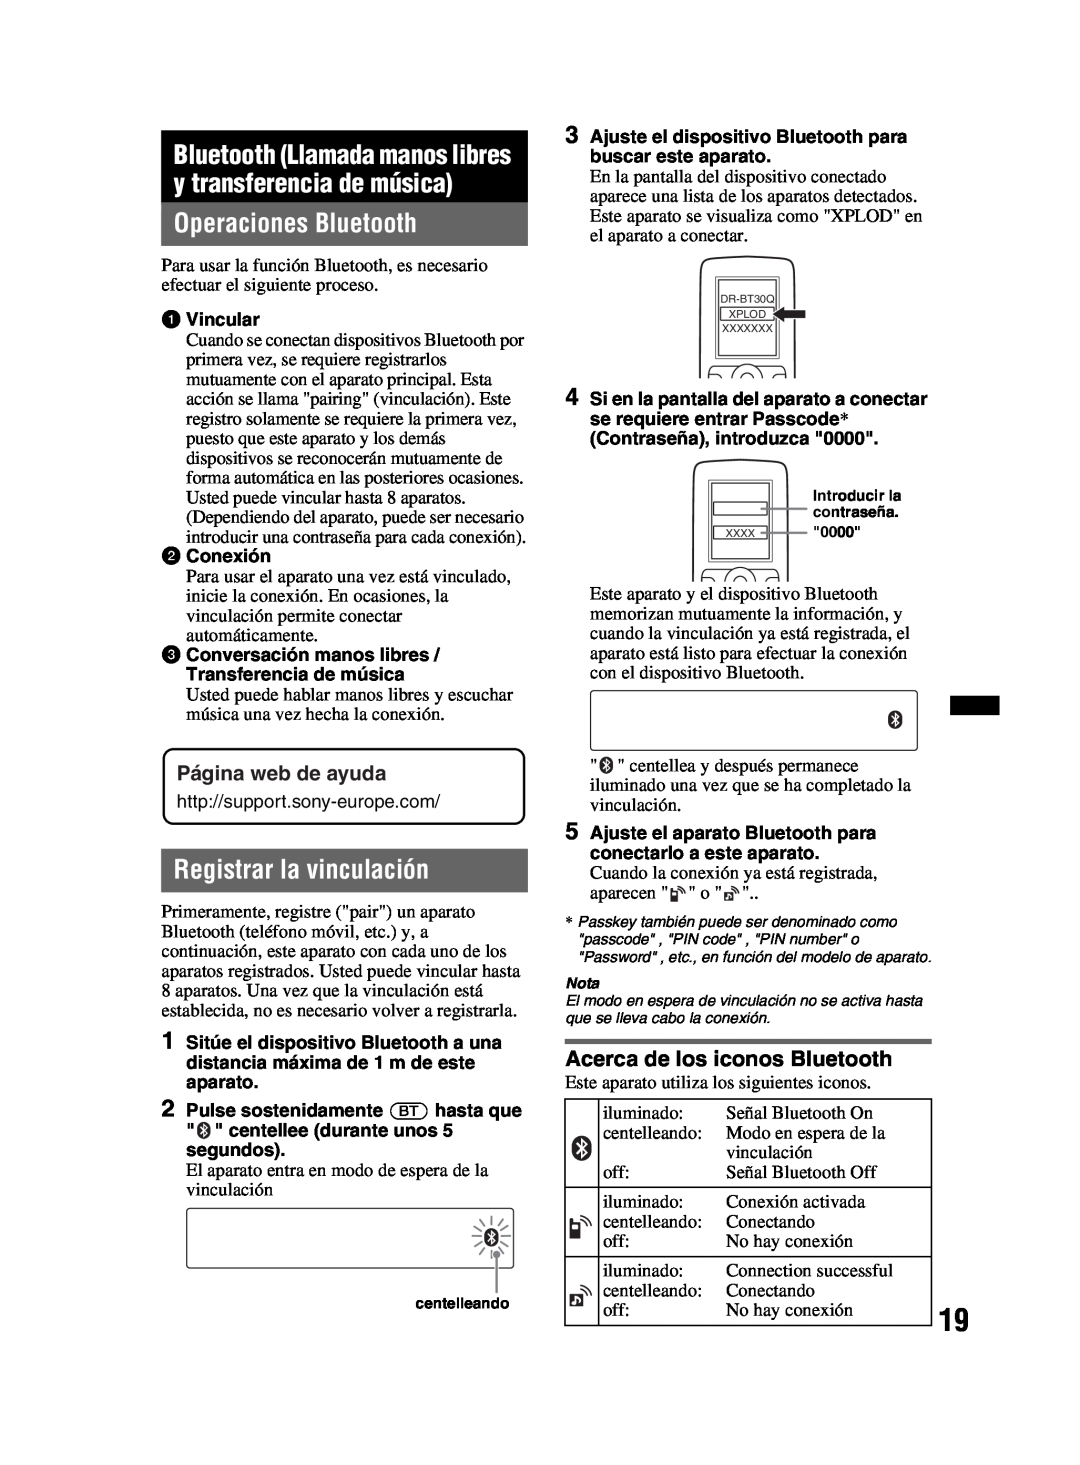 Sony MEX-BT2800 manual Operaciones Bluetooth, Registrar la vinculación, Página web de ayuda, Acerca de los iconos Bluetooth 